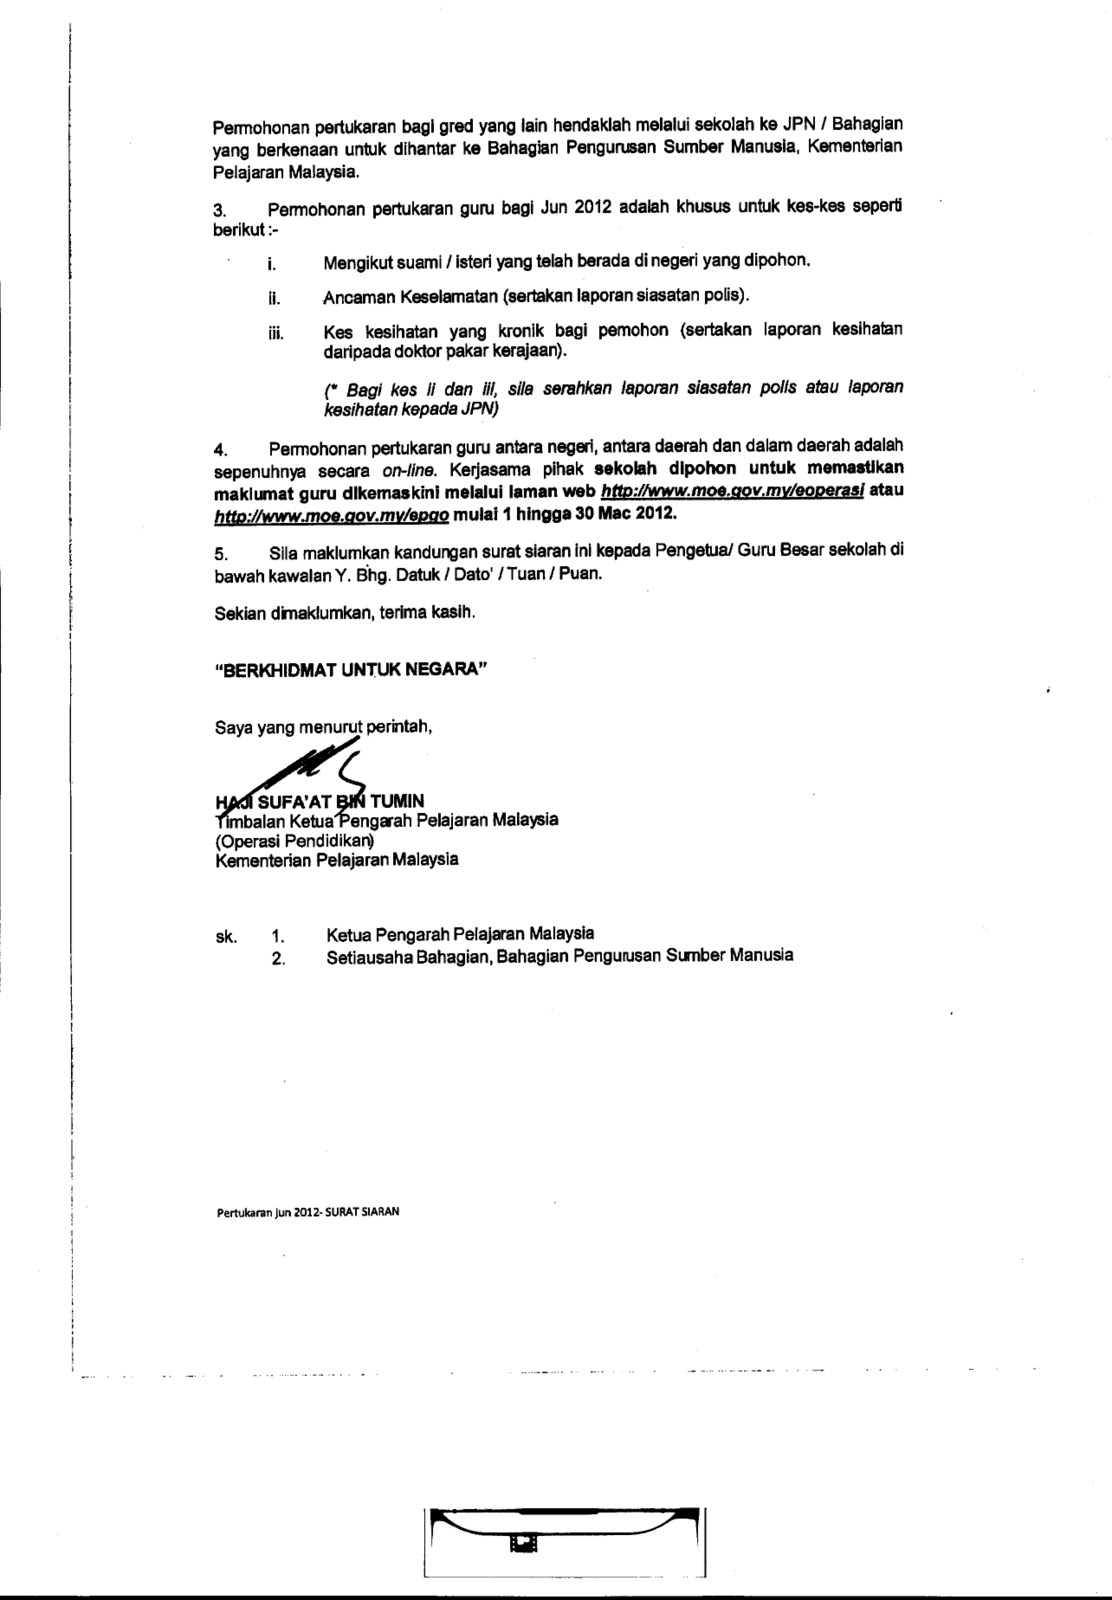 Surat Permohonan Pertukaran Unit Beruniform - Selangor l